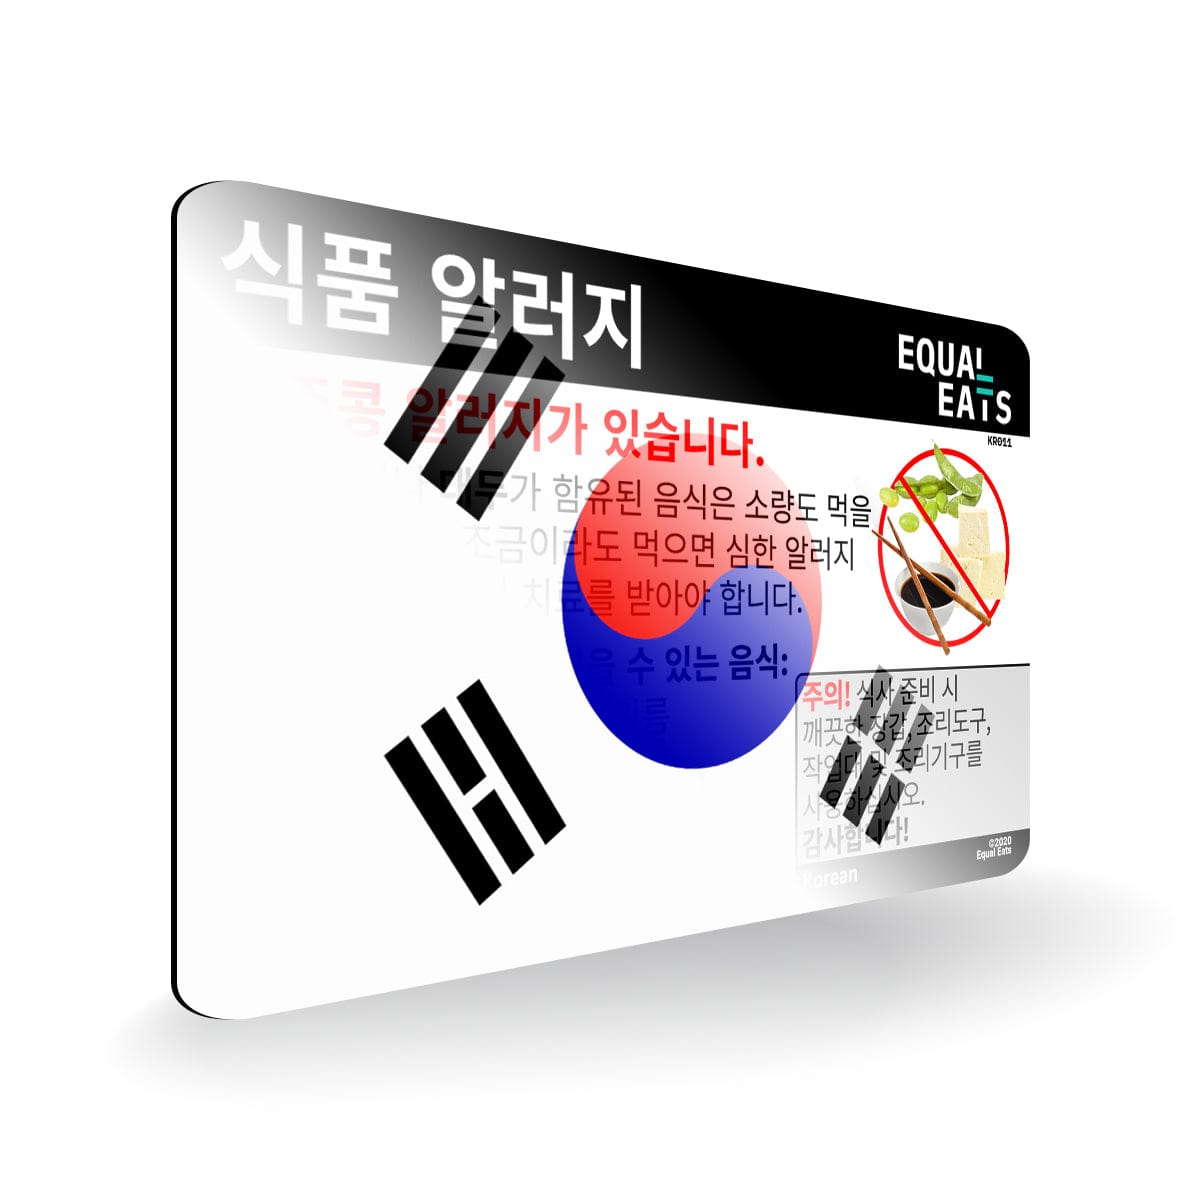 Soy Allergy in Korean. Soy Allergy Card for Korea